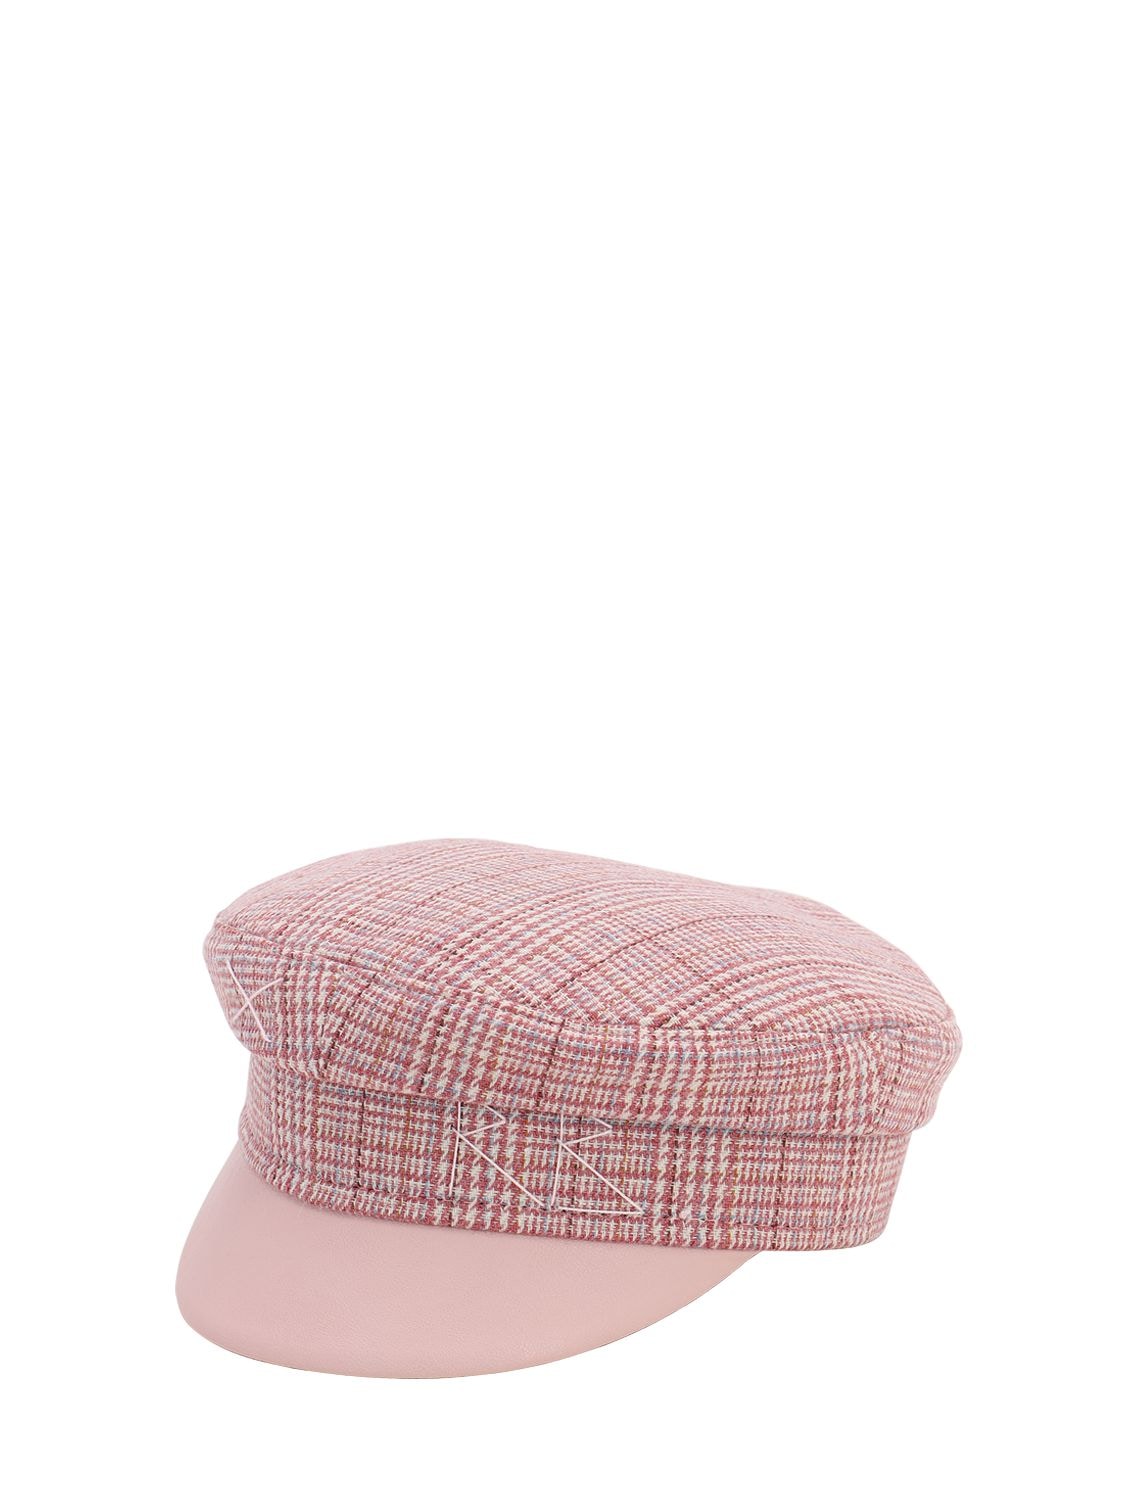 Ruslan Baginskiy Tweed Baker Boy Hat In Pink